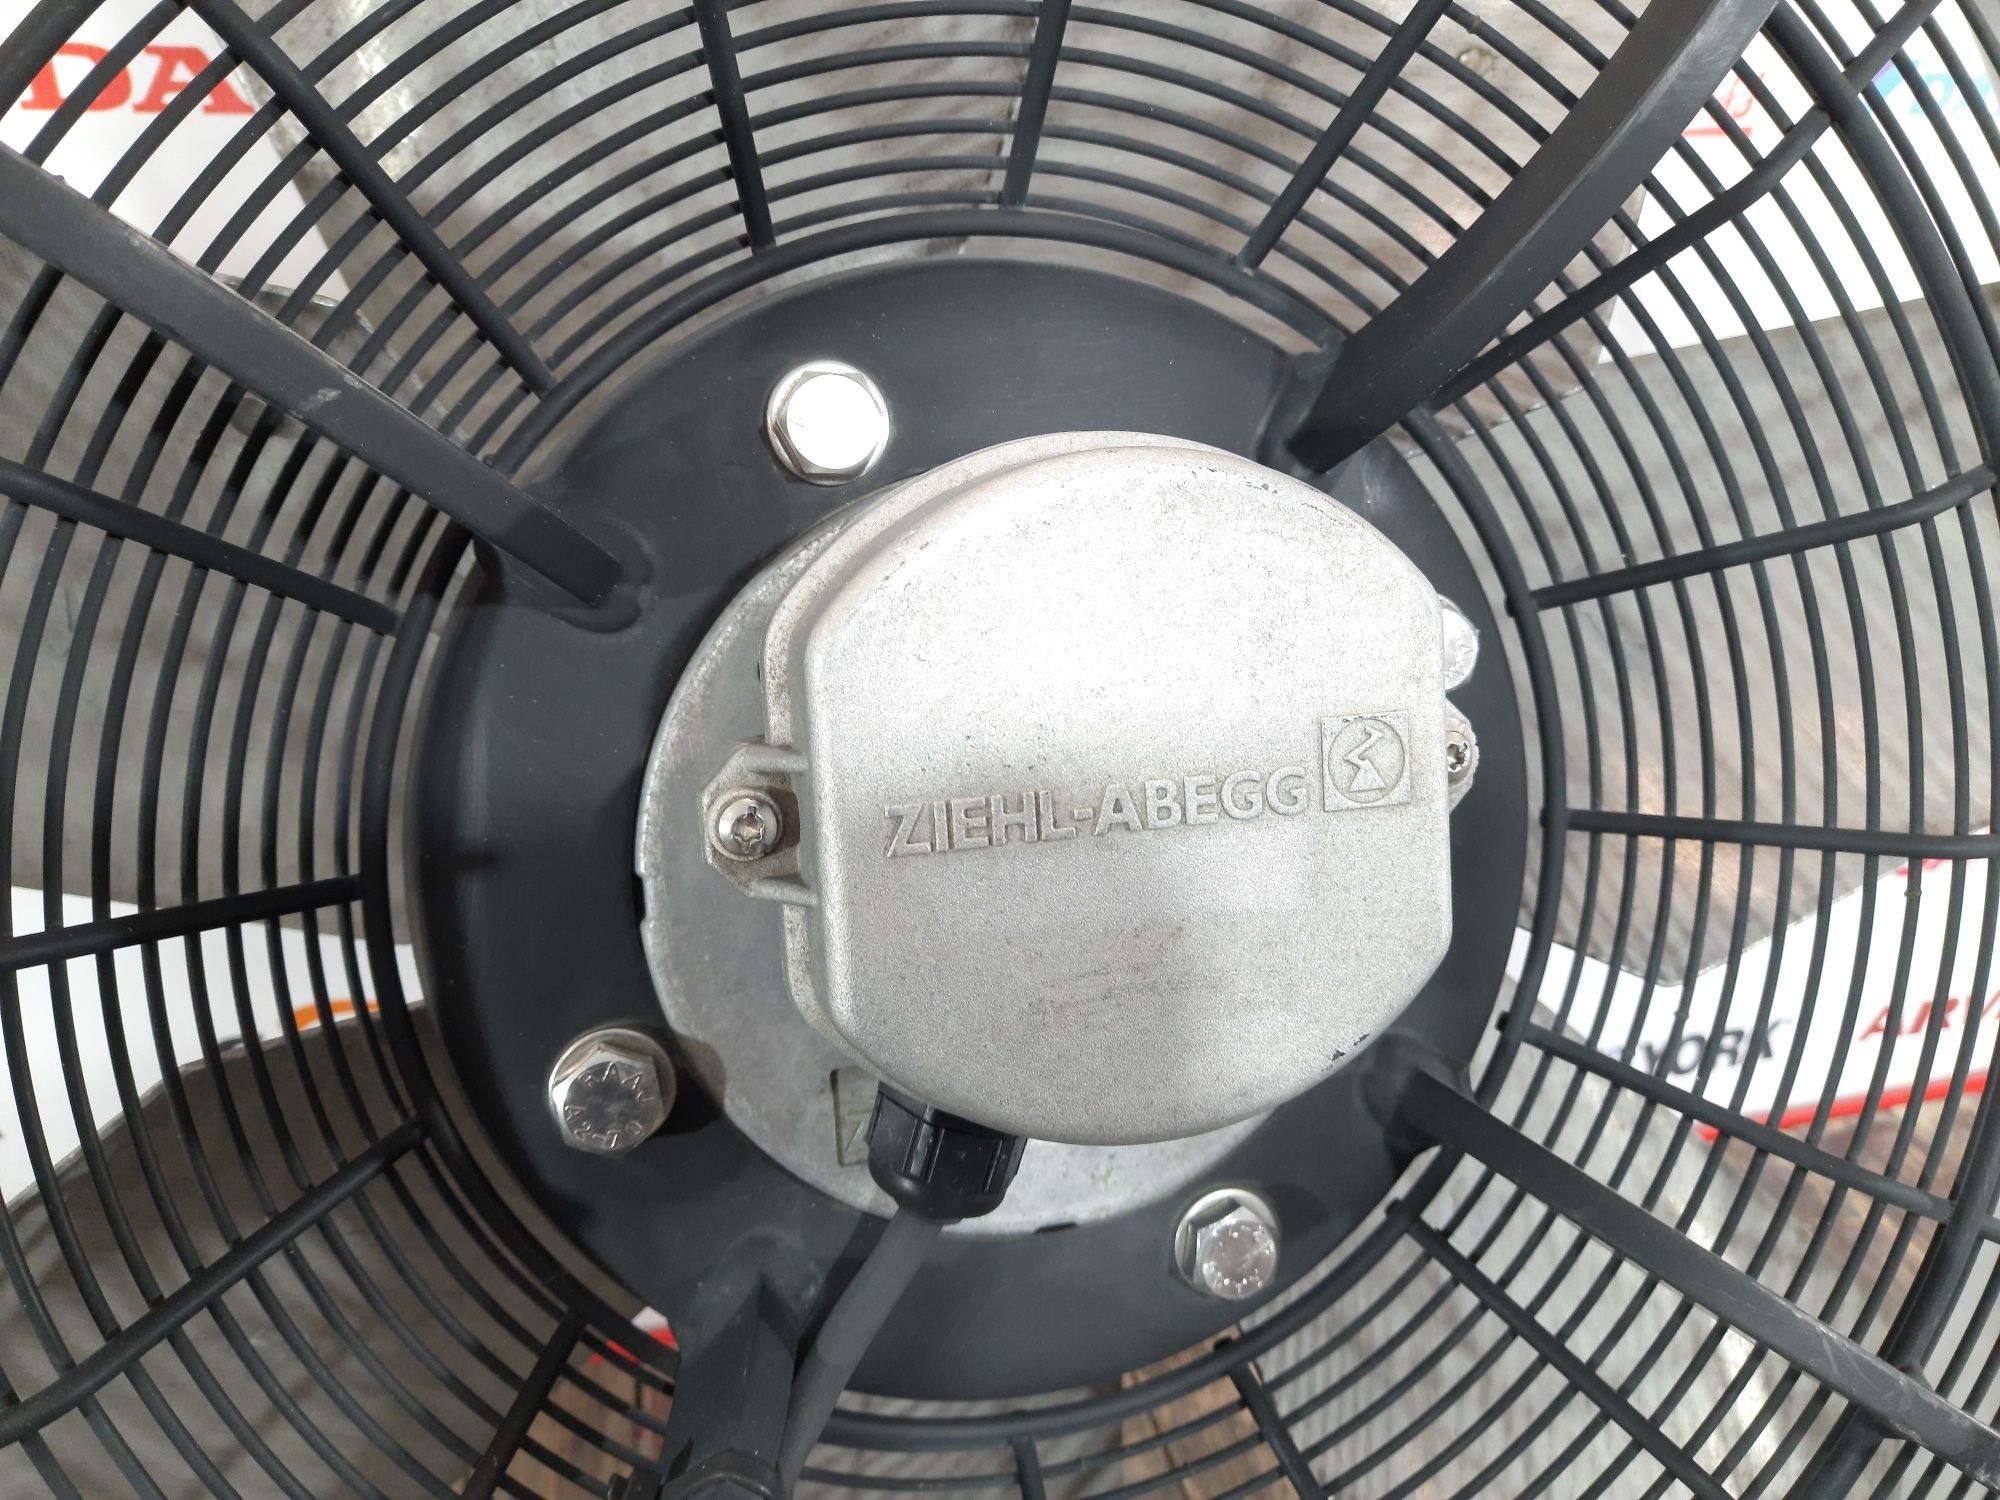 Осевой вентилятор Ziehl-Abegg (НОВЫЙ) Производитель Германия.